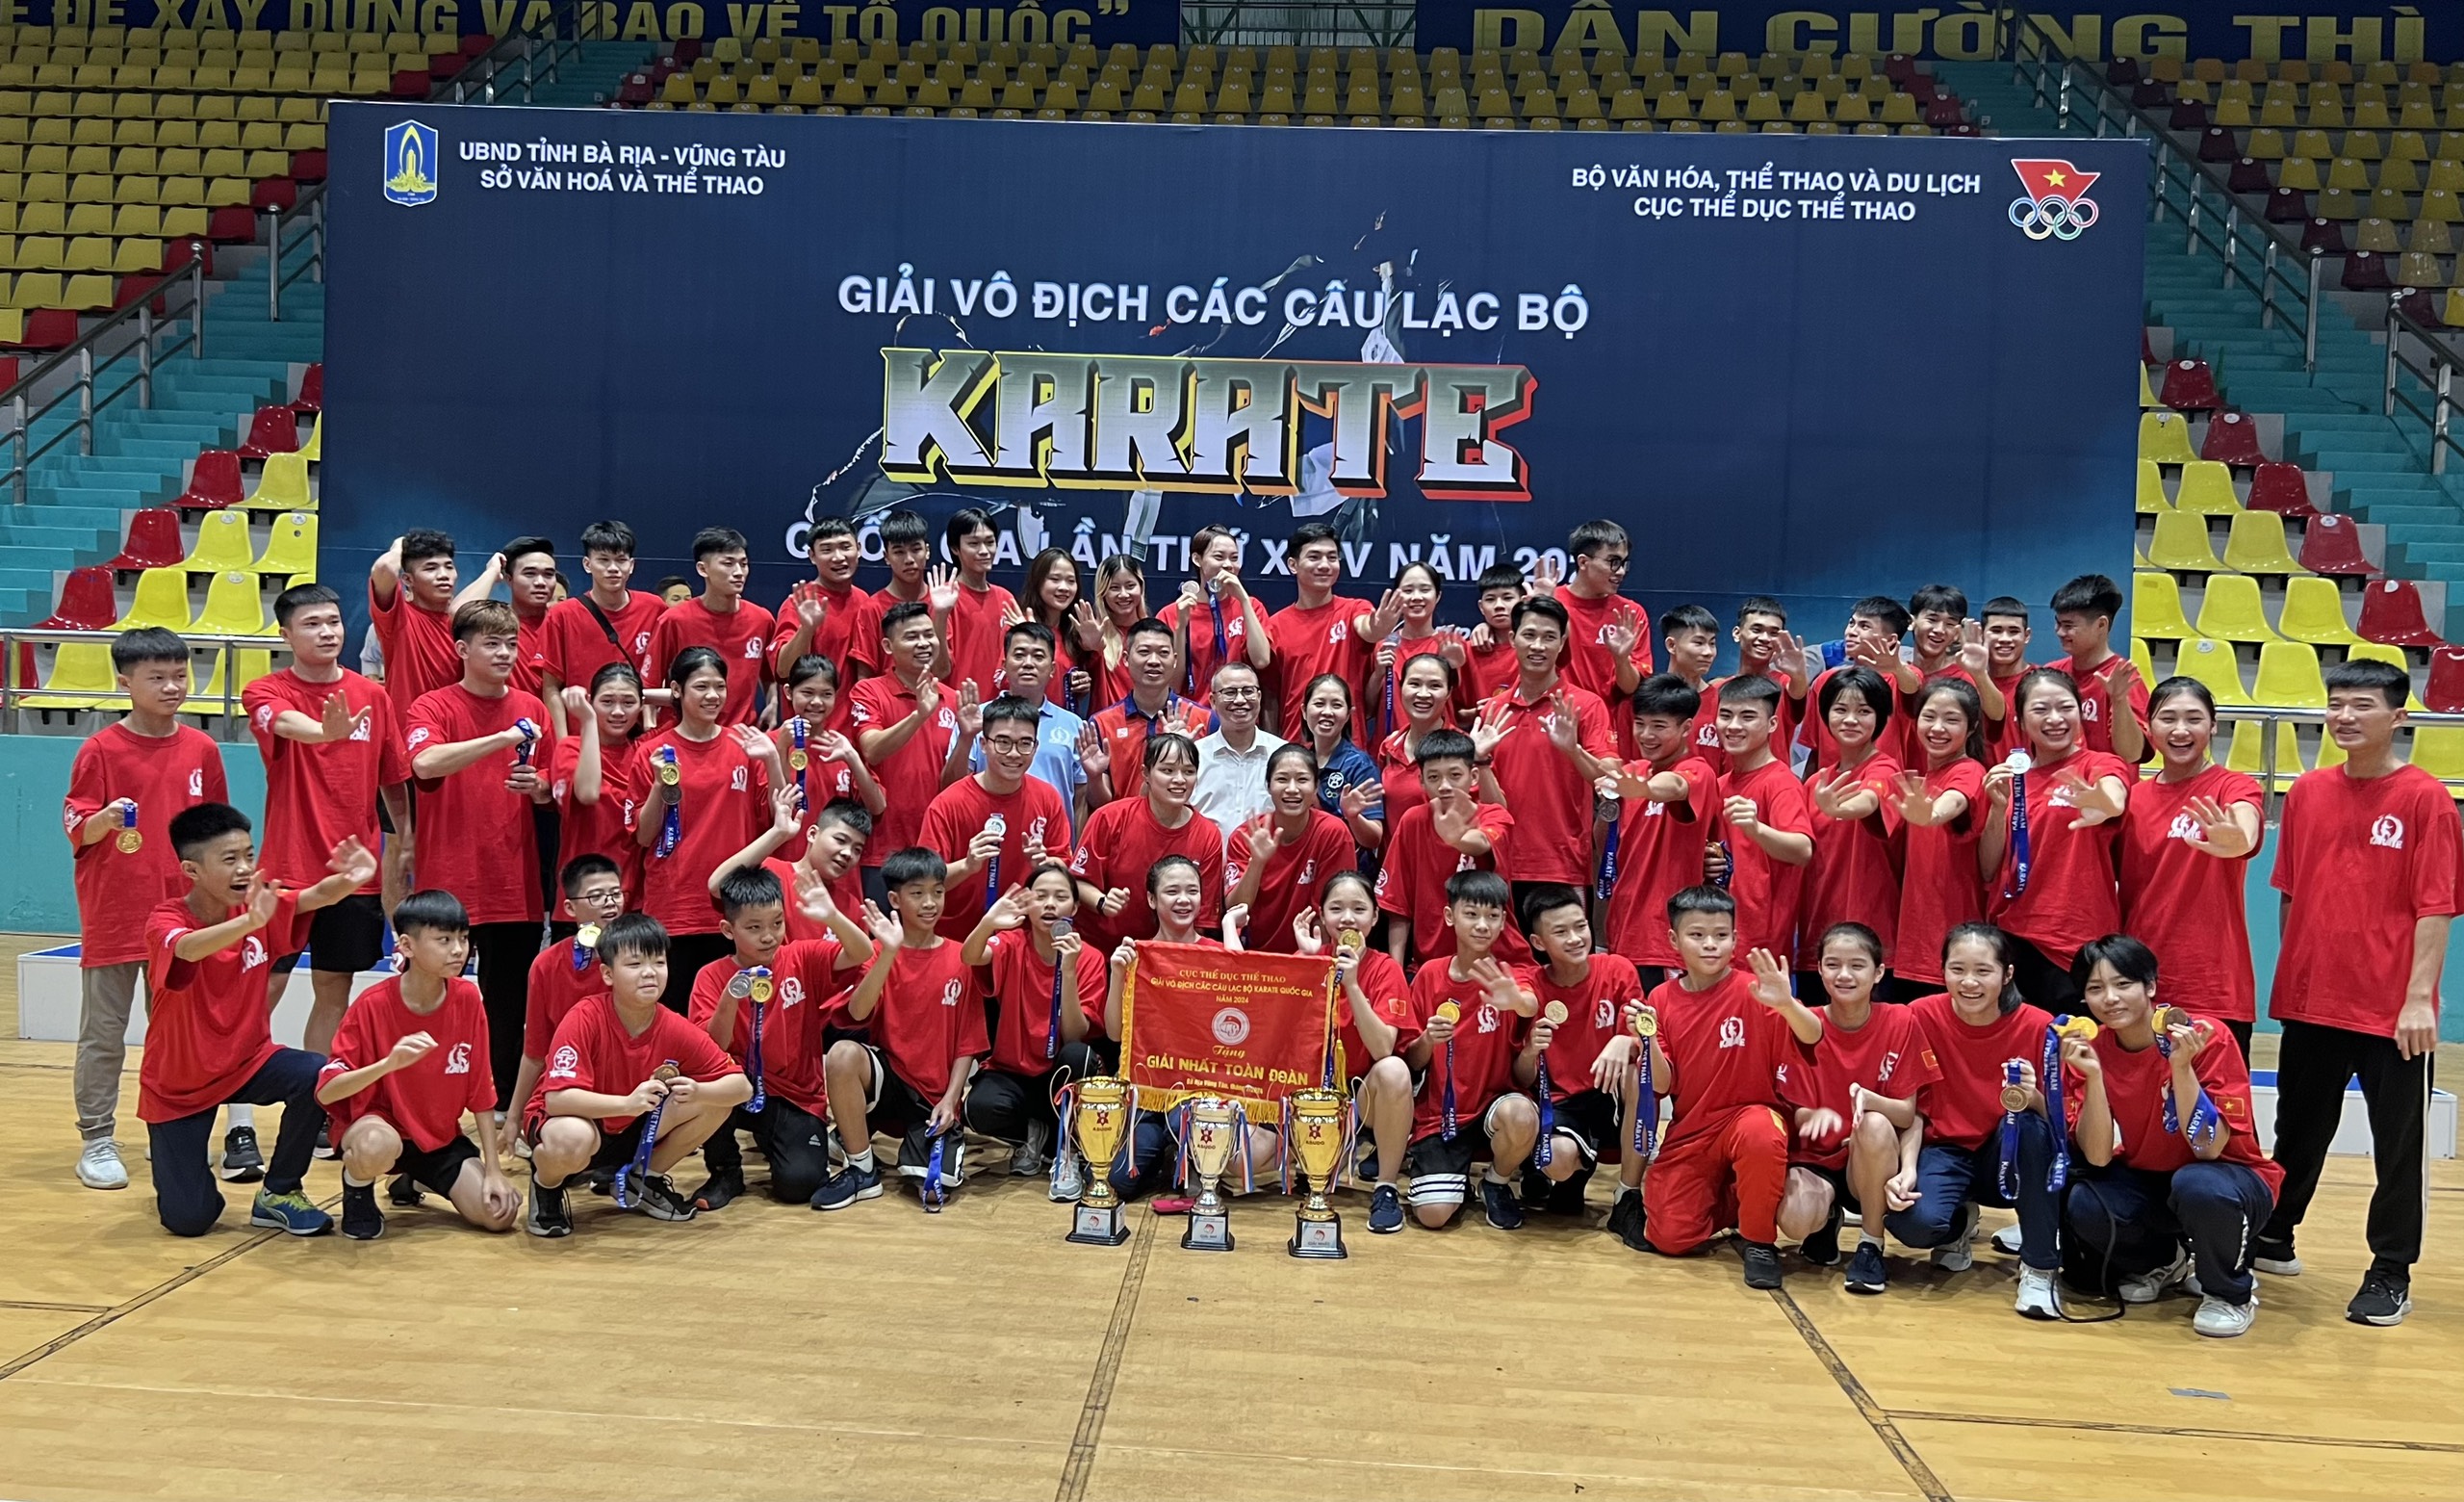 Giải vô địch các CLB karate quốc gia, Hà Nội Nhất toàn đoàn